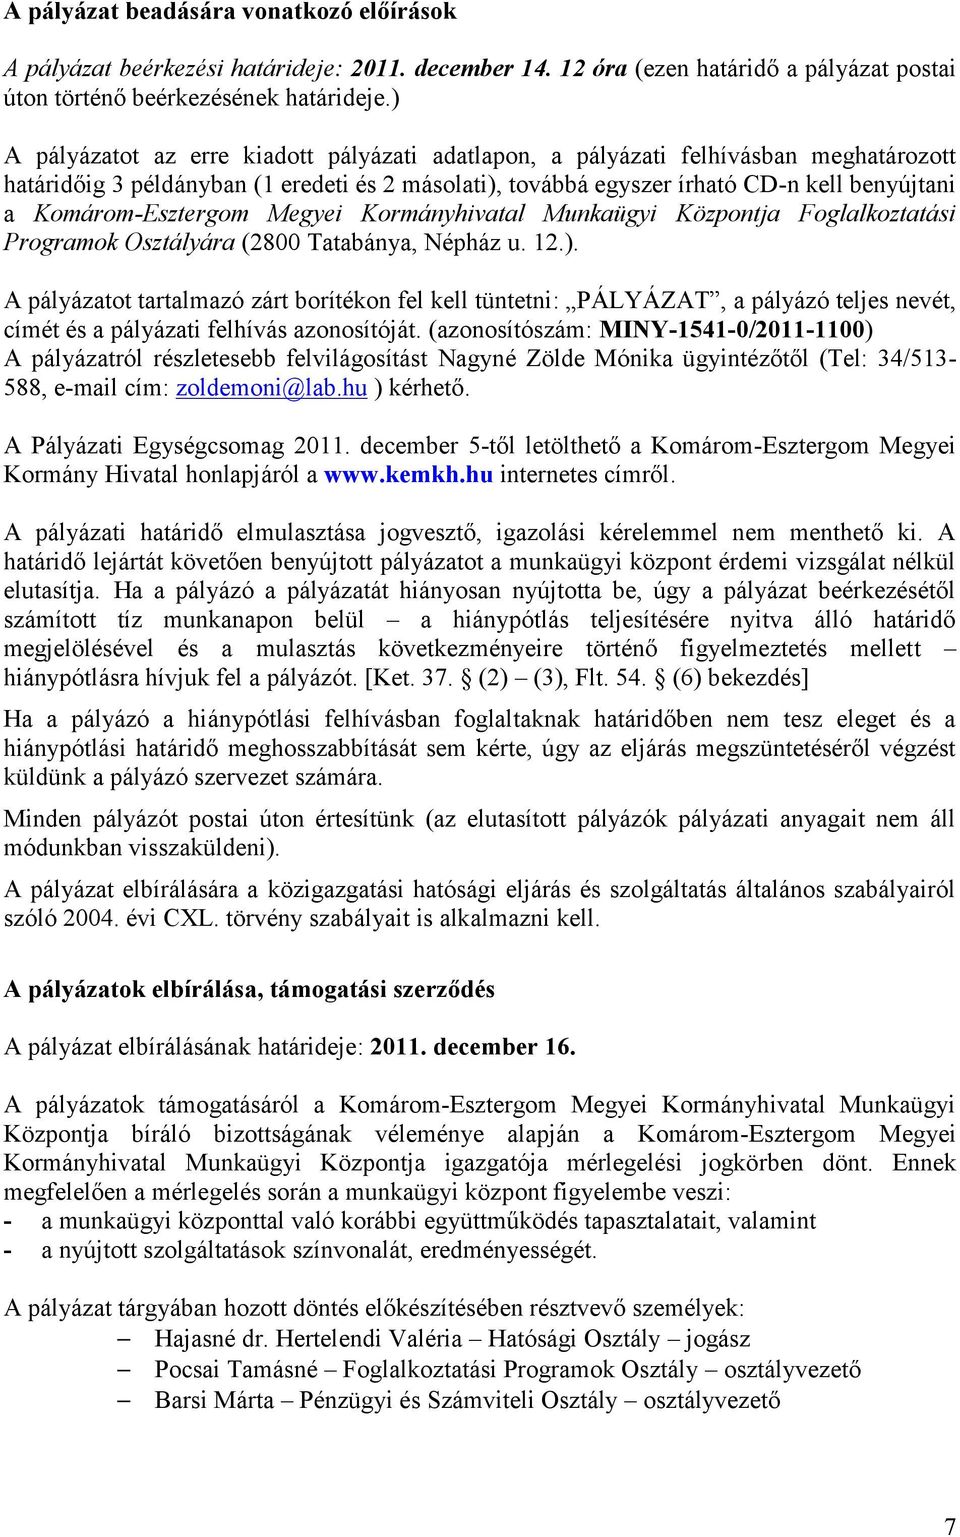 Komárom-Esztergom Megyei Kormányhivatal Munkaügyi Központja Foglalkoztatási Programok Osztályára (2800 Tatabánya, Népház u. 12.).